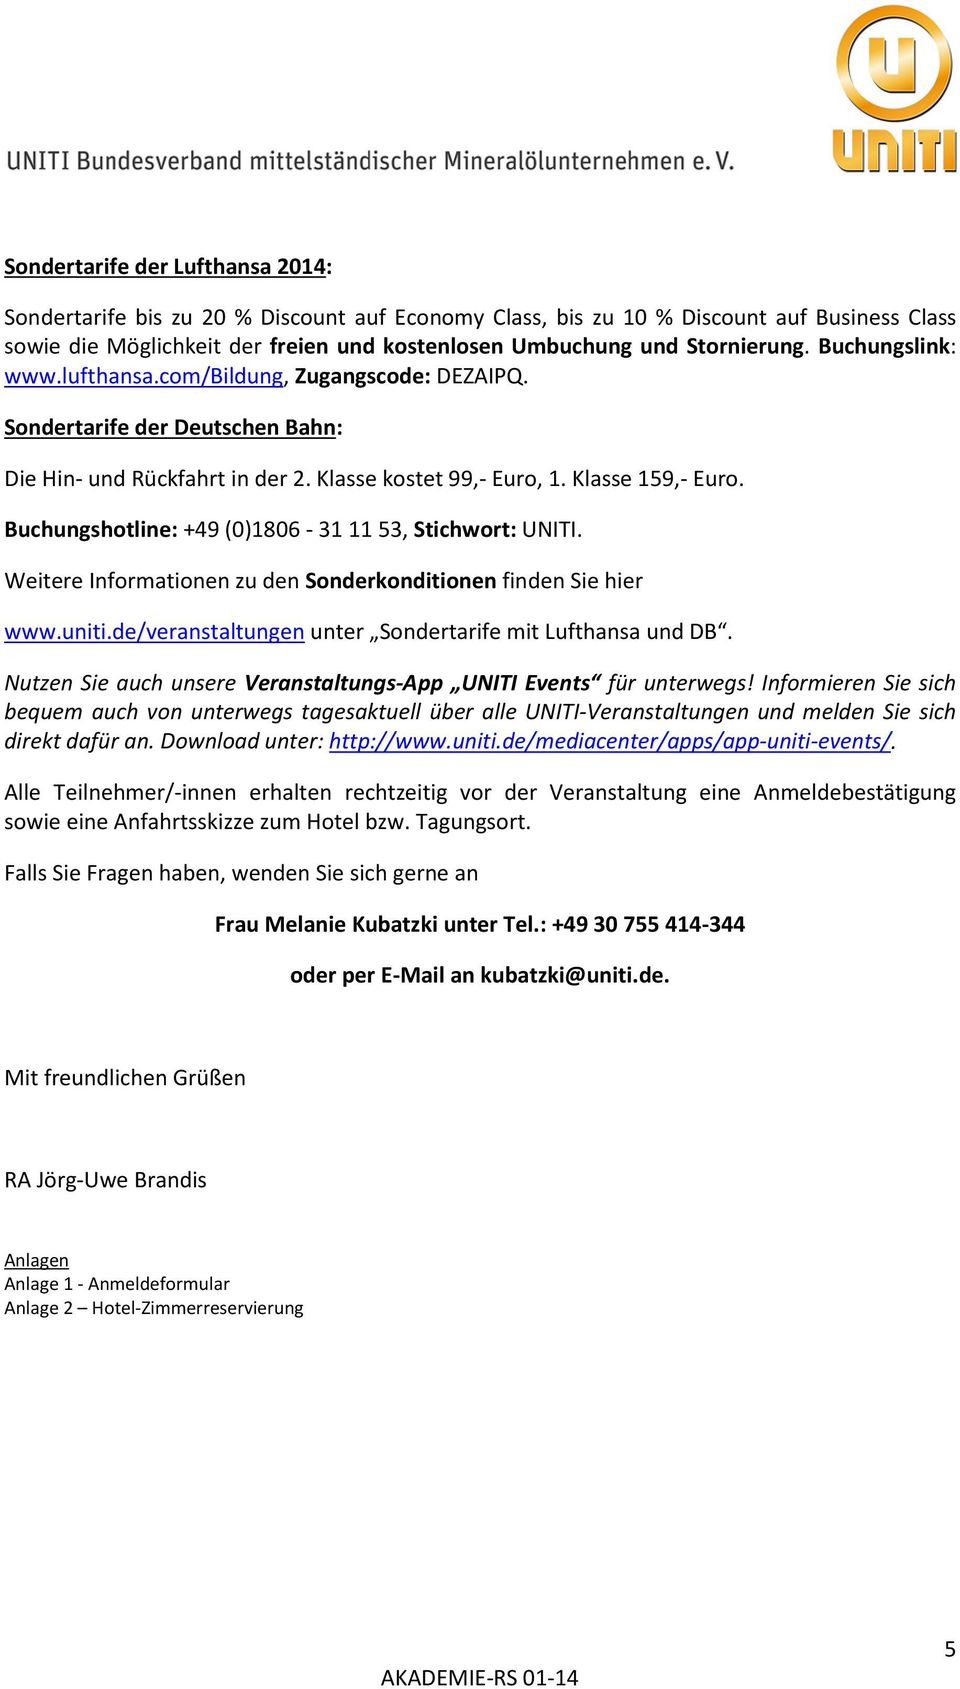 Buchungshotline: +49 (0)1806-31 11 53, Stichwort: UNITI. Weitere Informationen zu den Sonderkonditionen finden Sie hier www.uniti.de/veranstaltungen unter Sondertarife mit Lufthansa und DB.